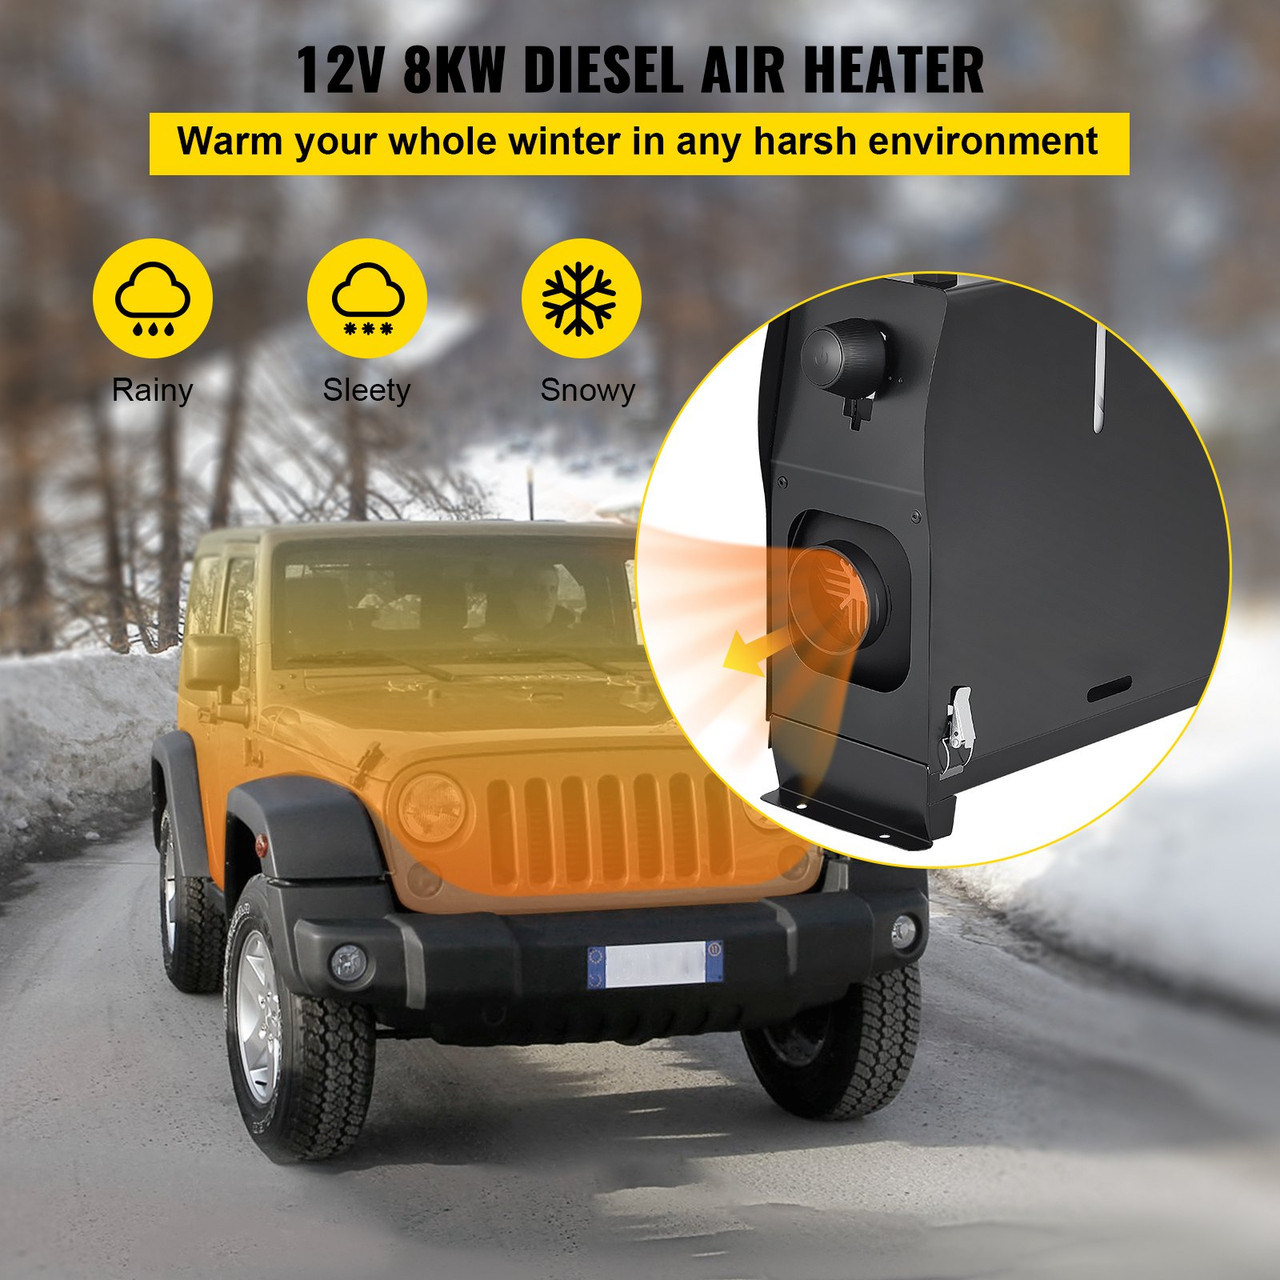 Diesel Air Heater All in One, Fast Heating, 8KW Diesel Heater 12V, Muffler, Diesel Parking Heater for Car,Truck,Vans, RV, Boats, Trailer,Caravan and Motorhome